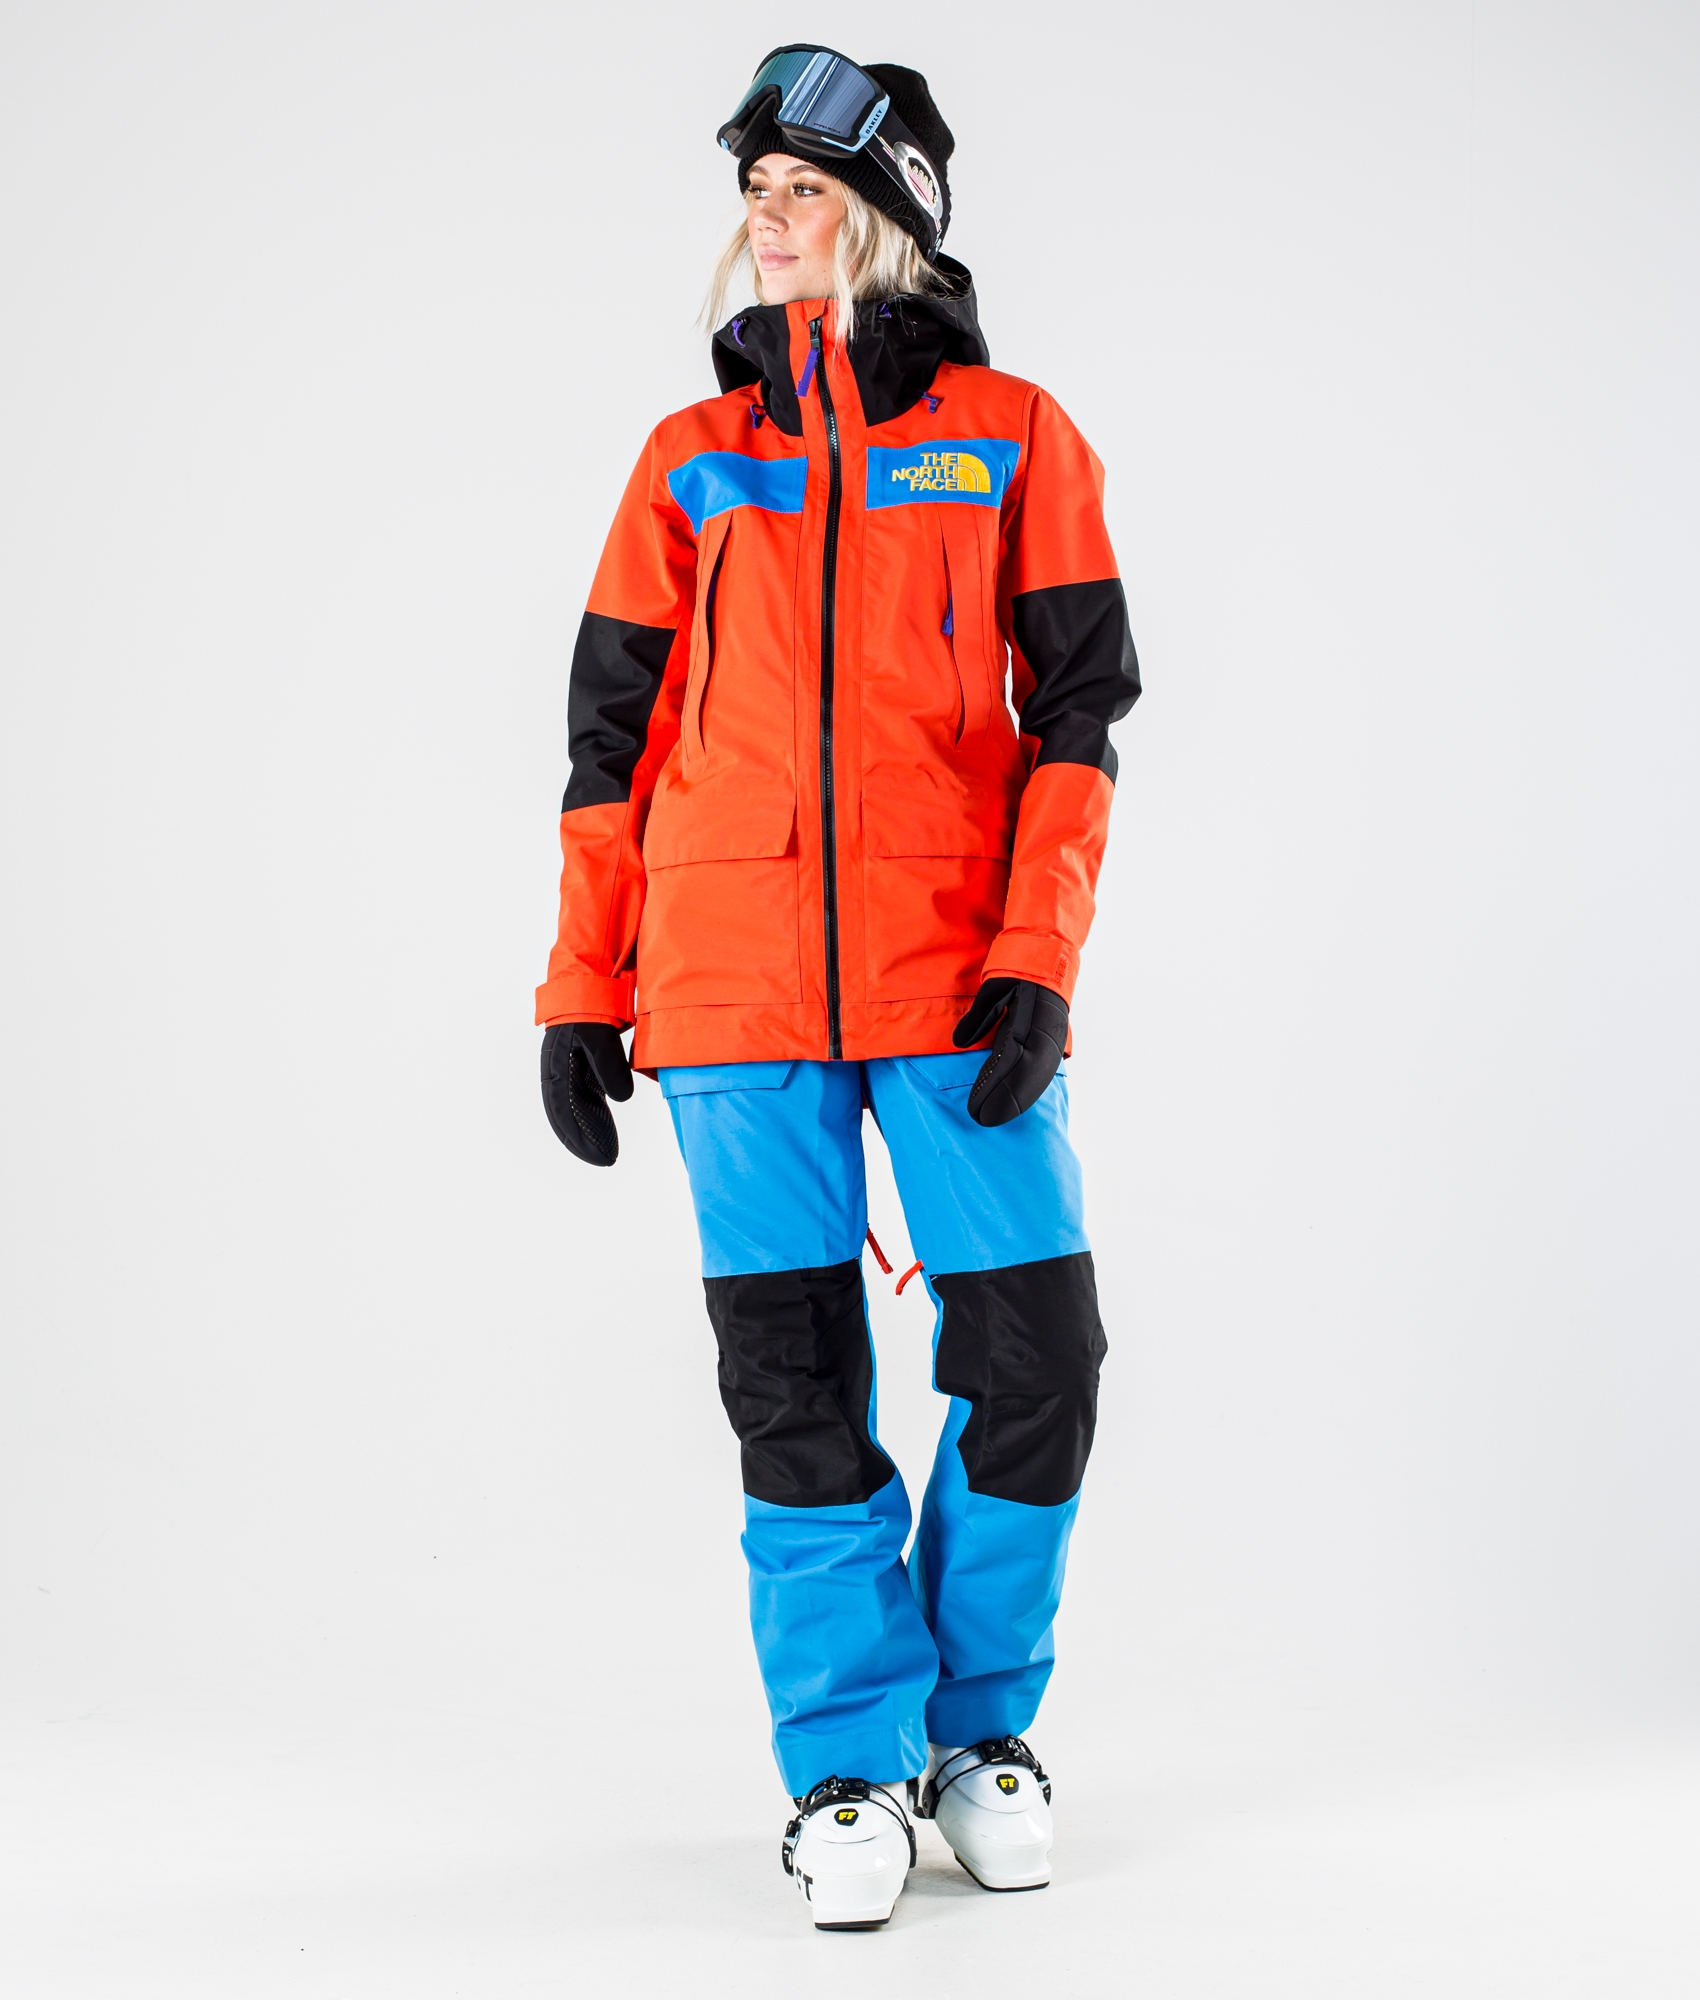 north face ski jacket and pants